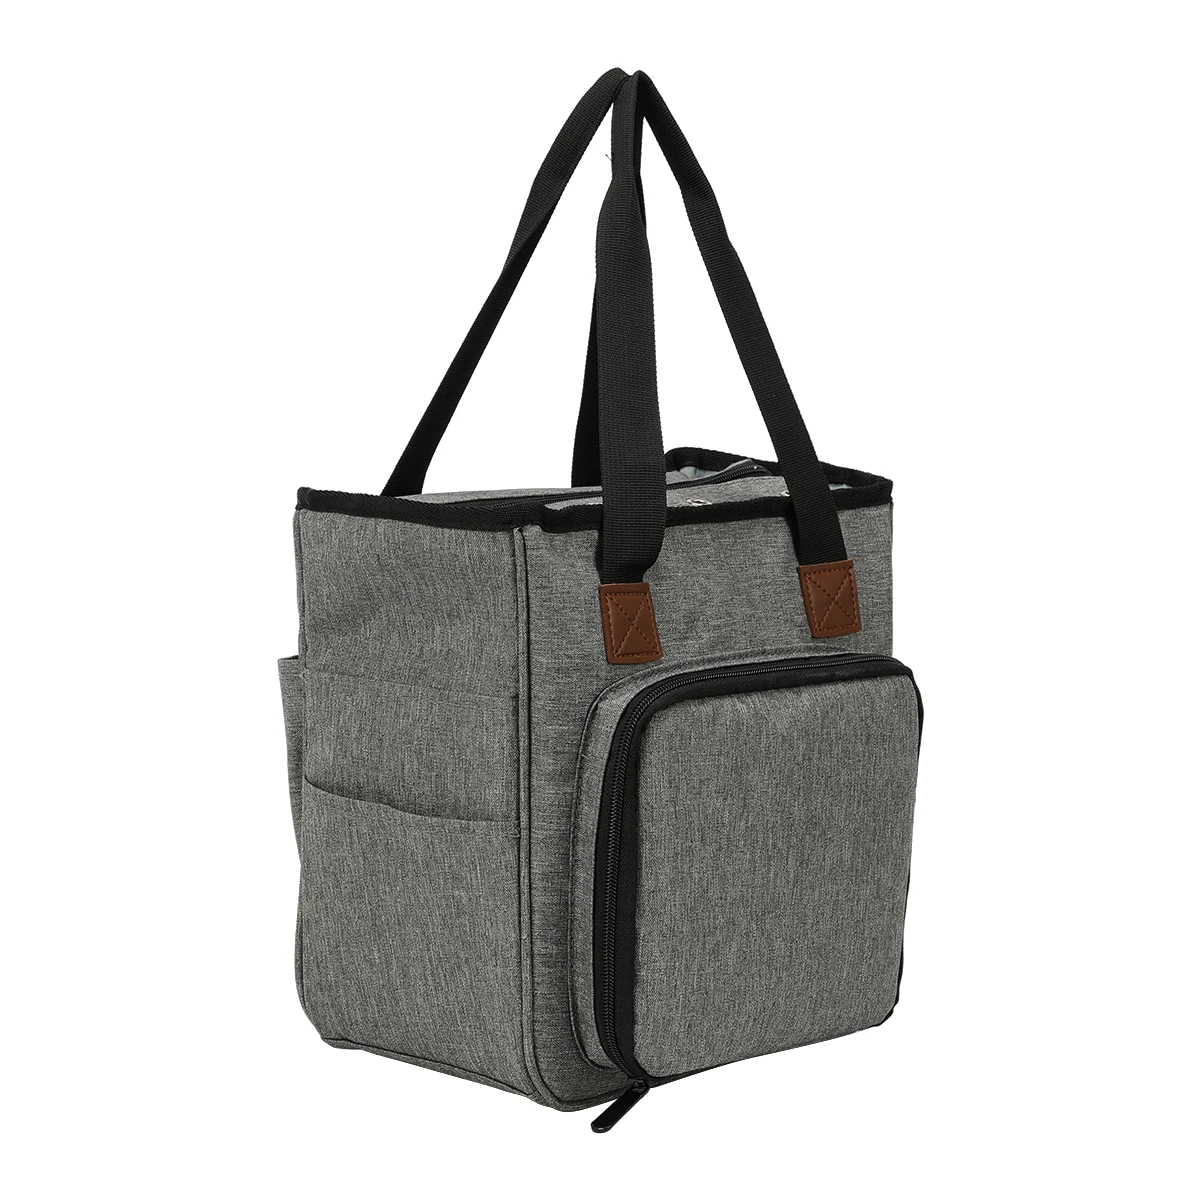 Портативные сплетенные сумки крючком Крючки Пряжа сумка для хранения шерсть Вязание Иглы Швейные принадлежности Инструменты путешествия бытовой Органайзер - Цвет: Gray Color